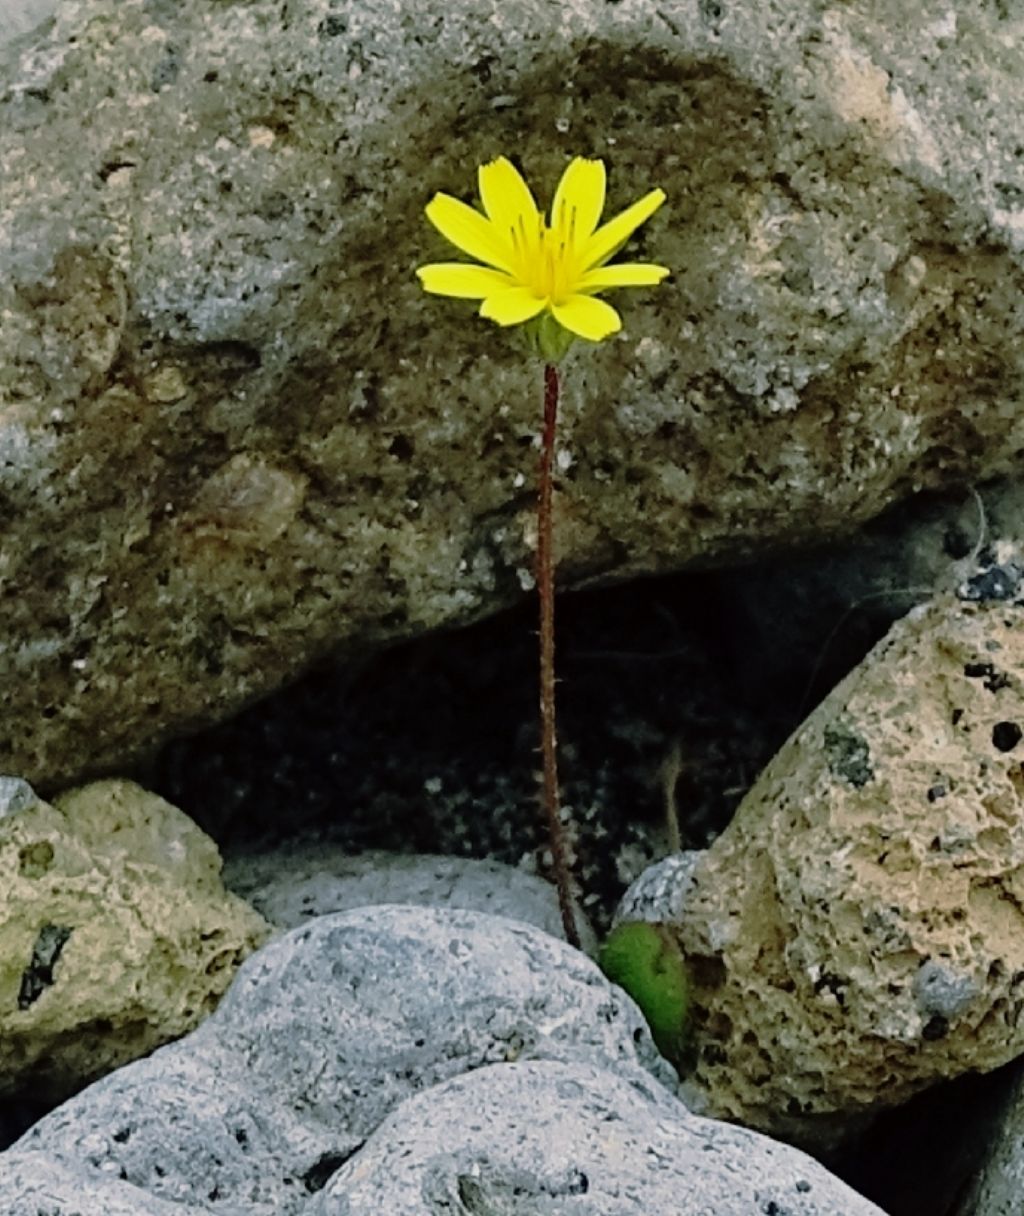 Fiorellino giallo a 8 petali:  cfr. Hyoseris sp.